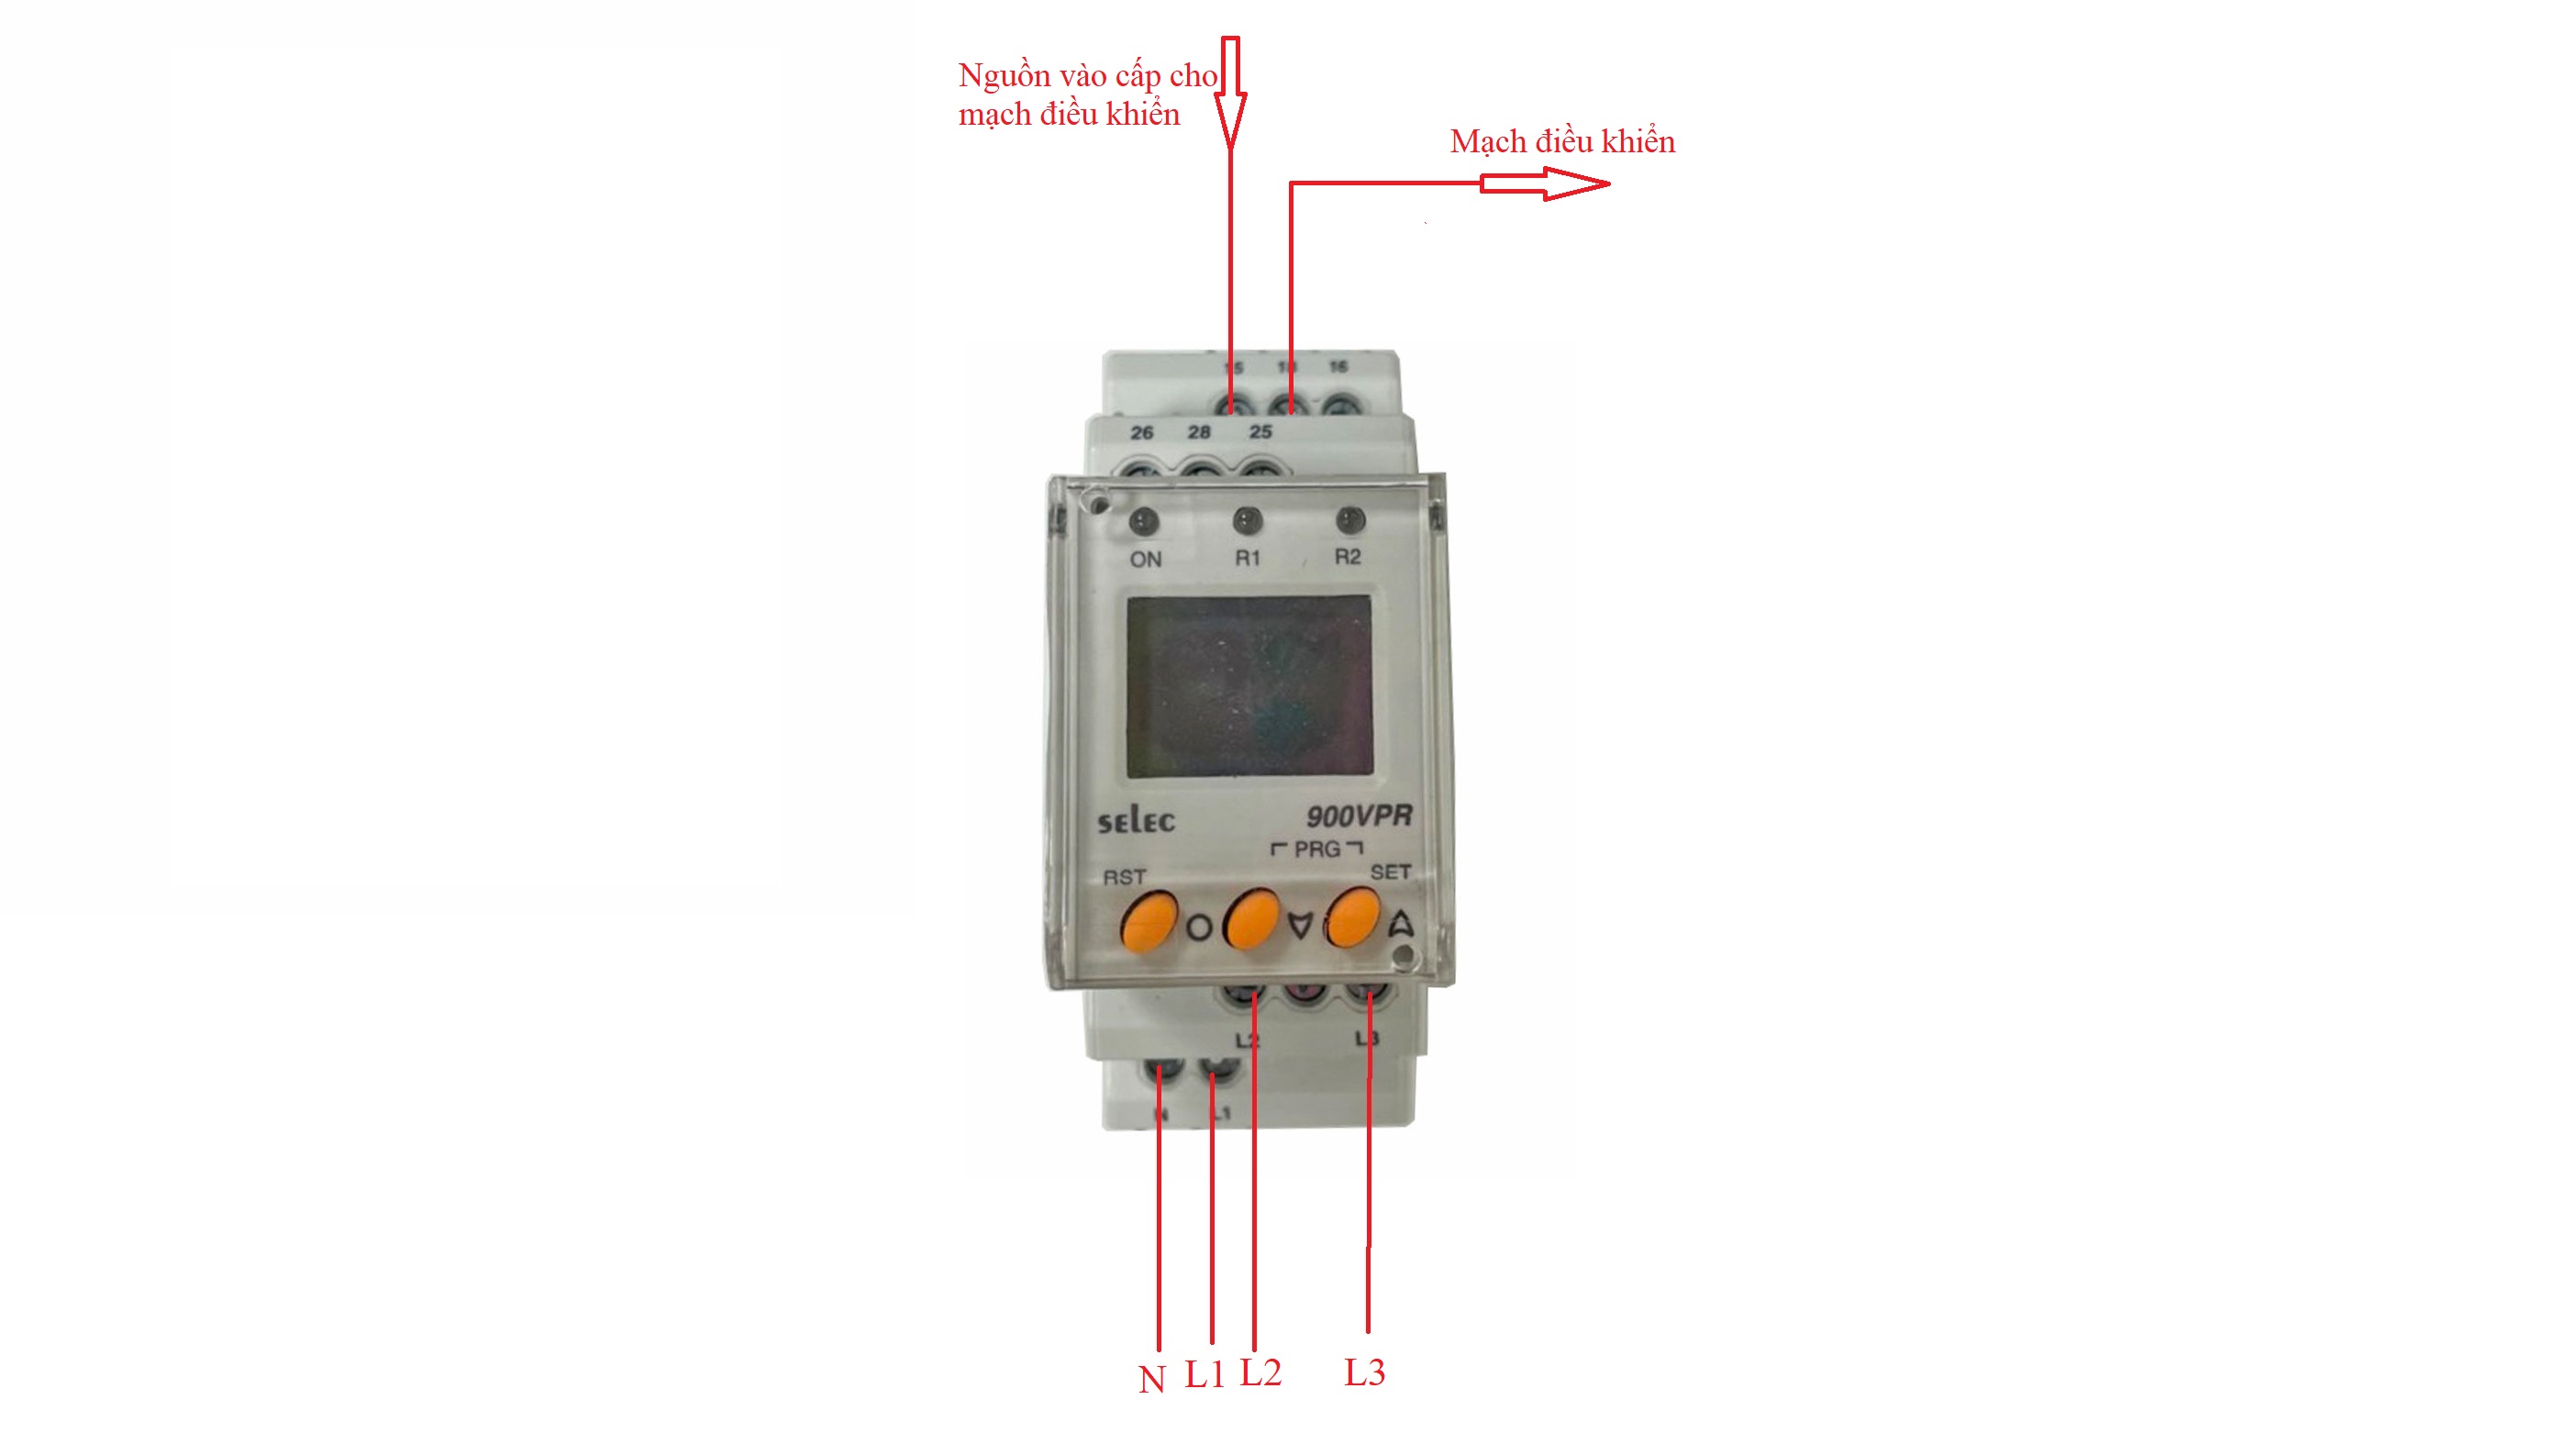 Sơ đồ đấu nối Rơ le bảo vệ Selec 900VPR sử dụng cấp nguồn mạch điều khiển